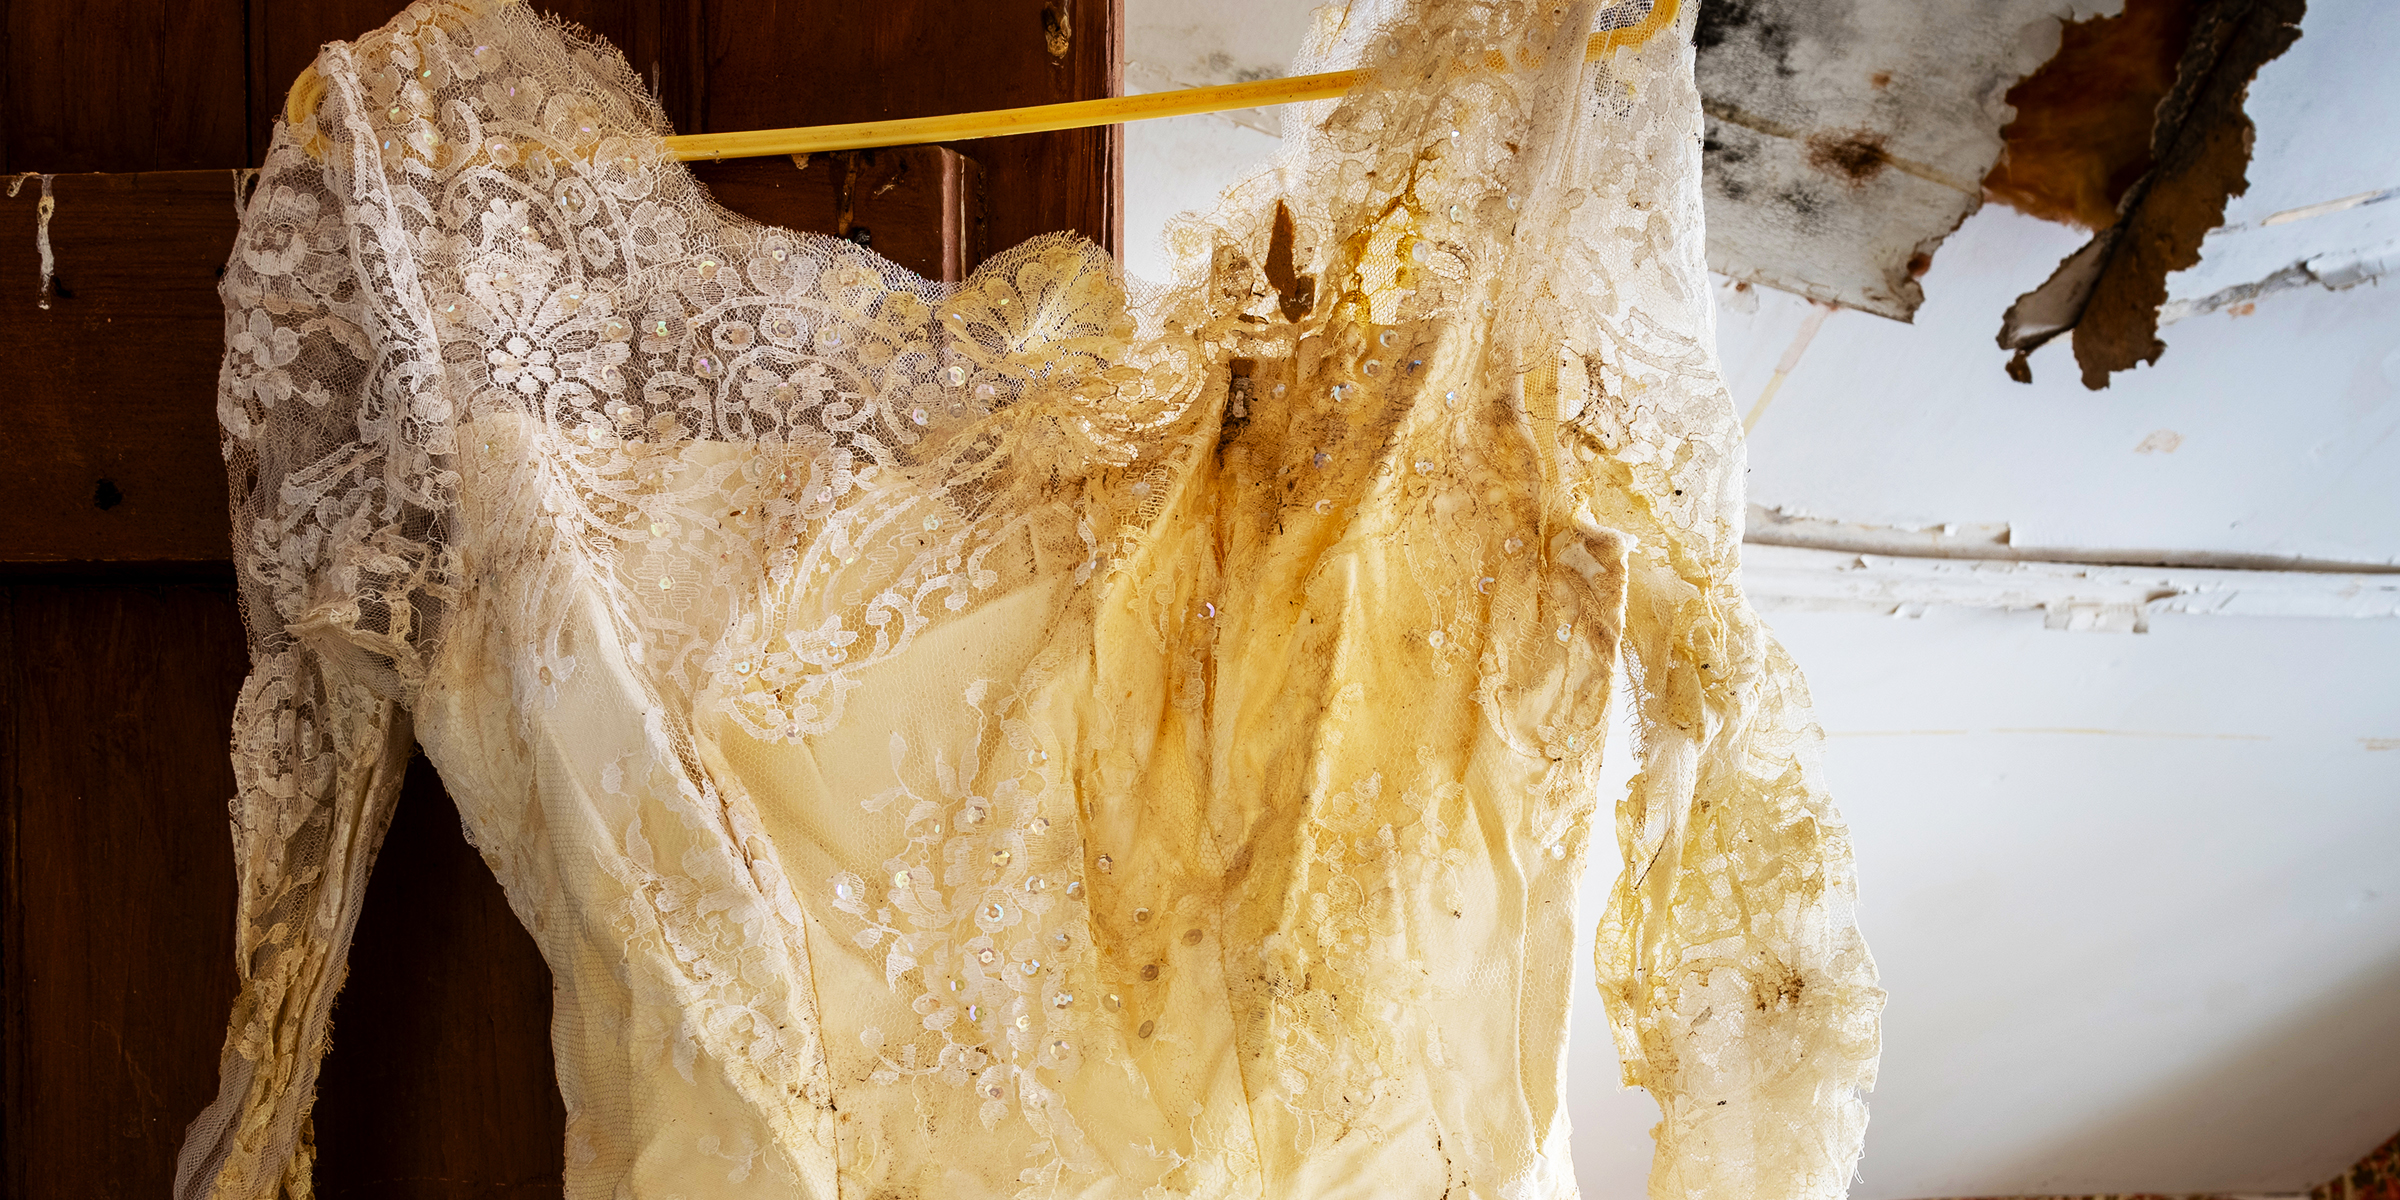 A ruined wedding dress | Source: Shutterstock